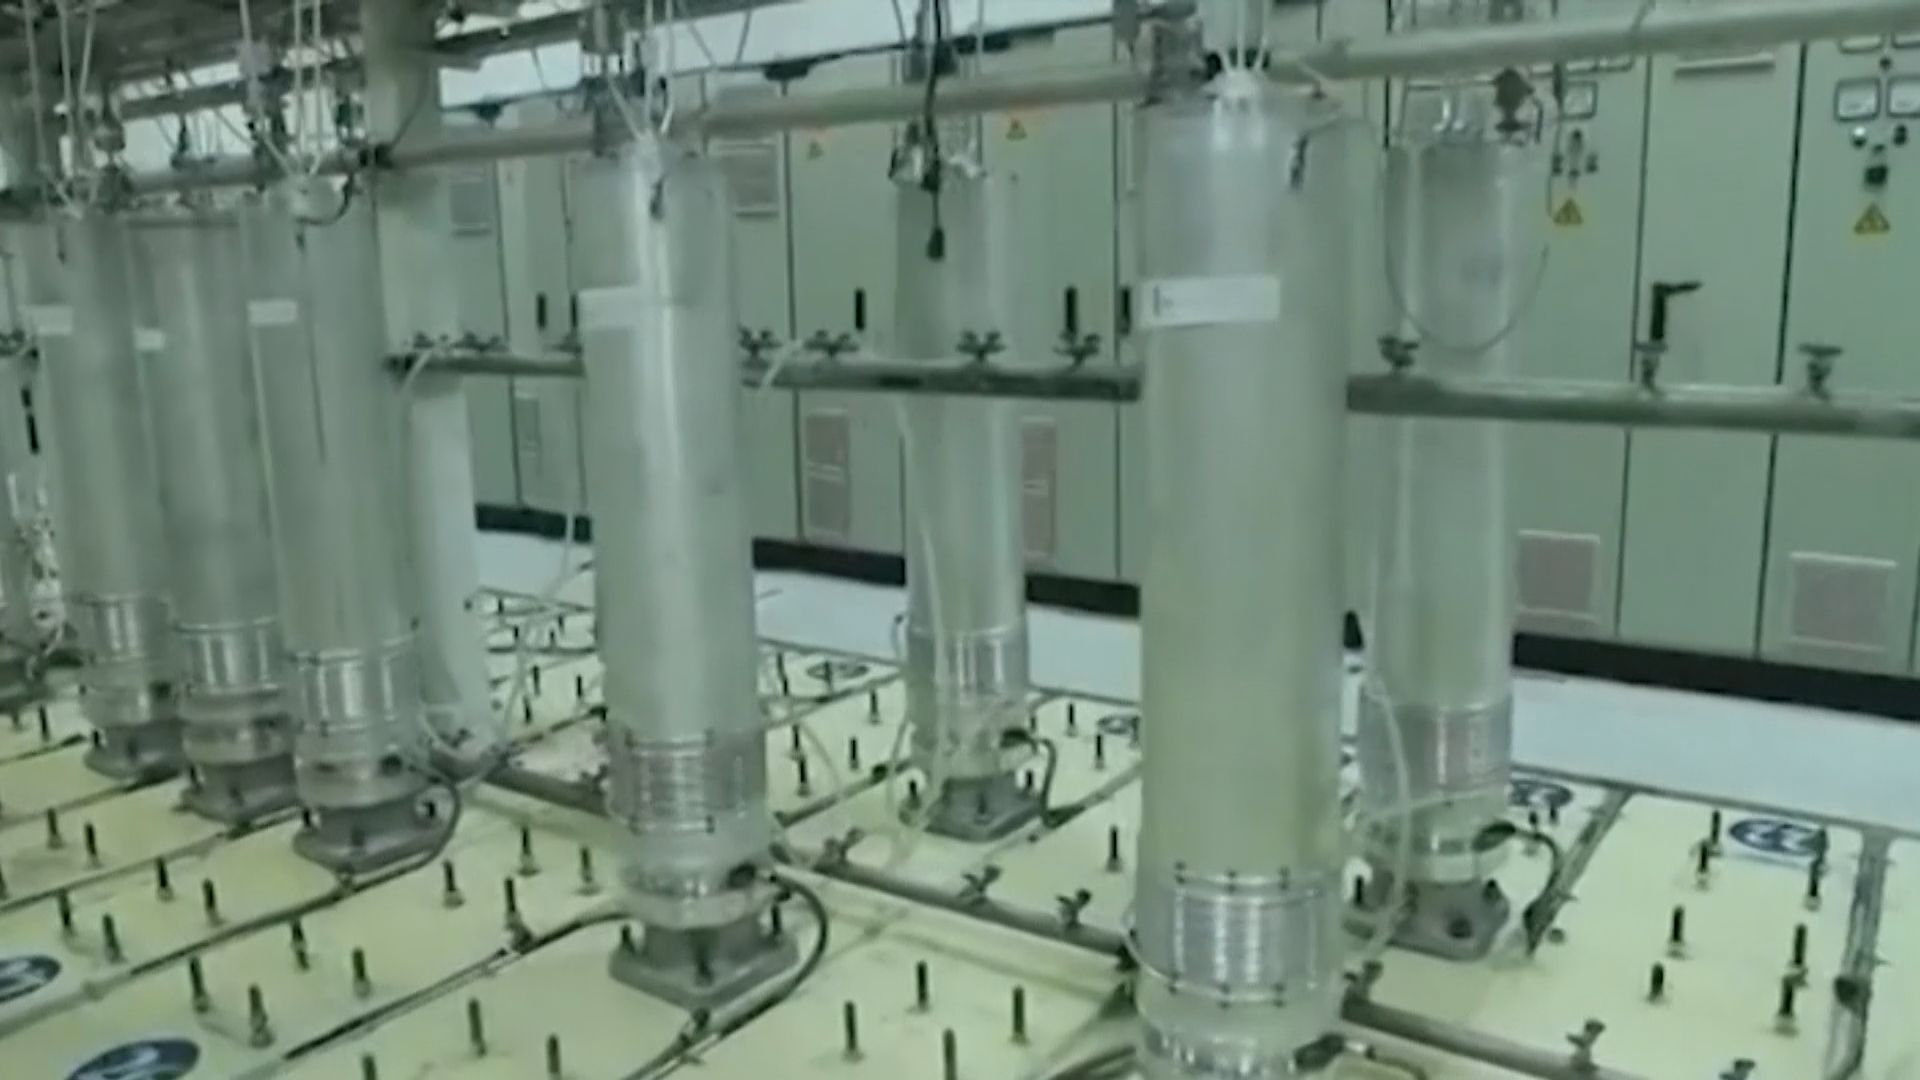 伊朗稱目前提煉濃縮鈾數量較達成核協議前多